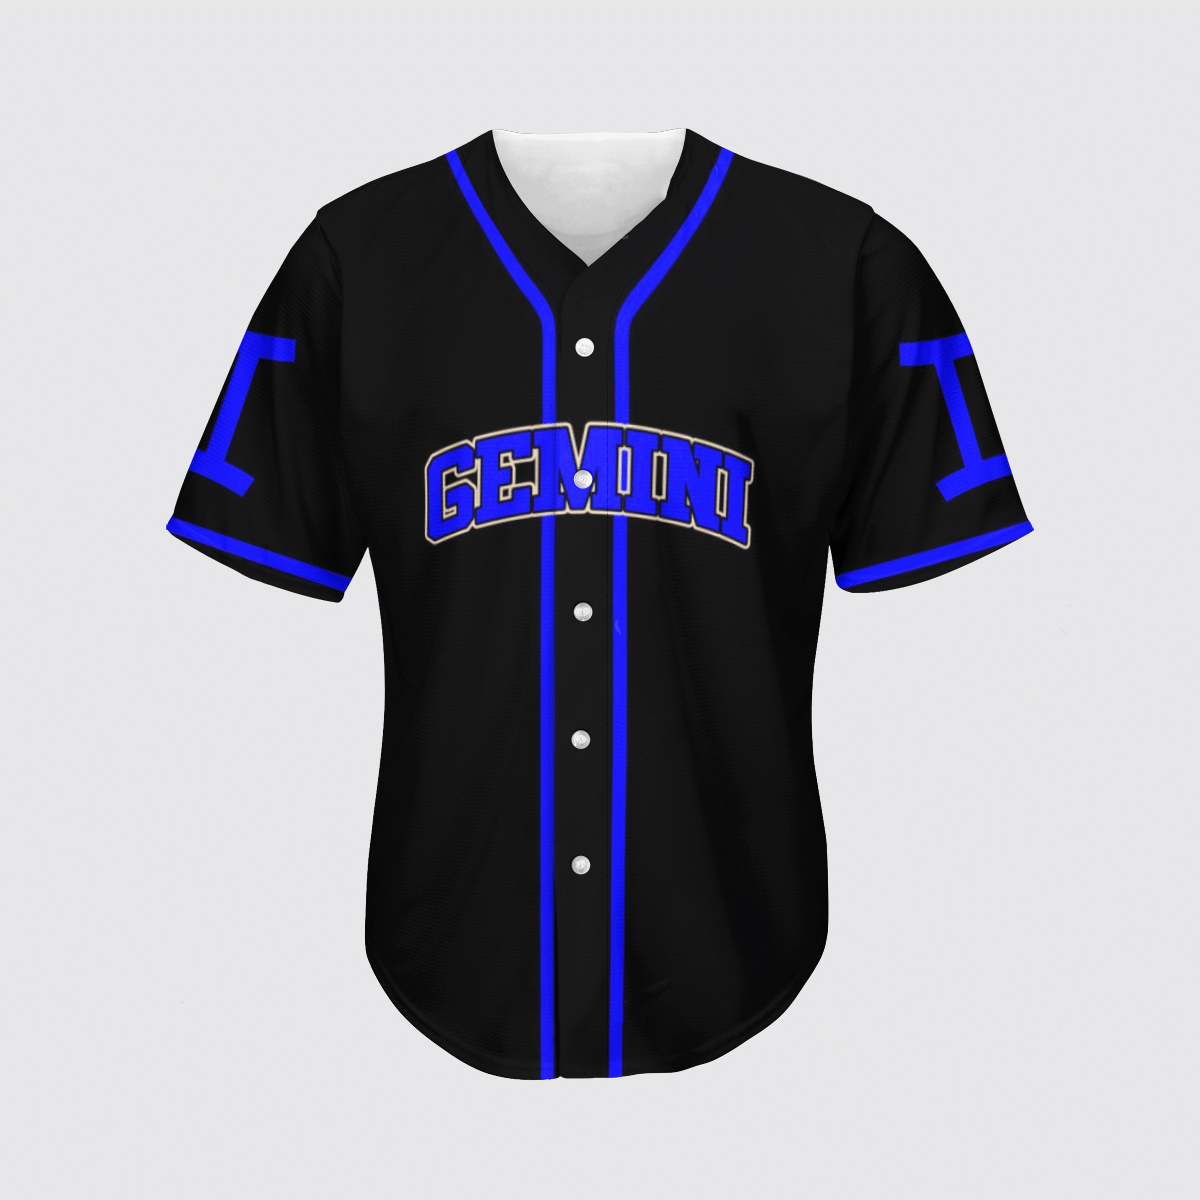 Stunning zodiac gemini baseball jersey shirt - Picture 1